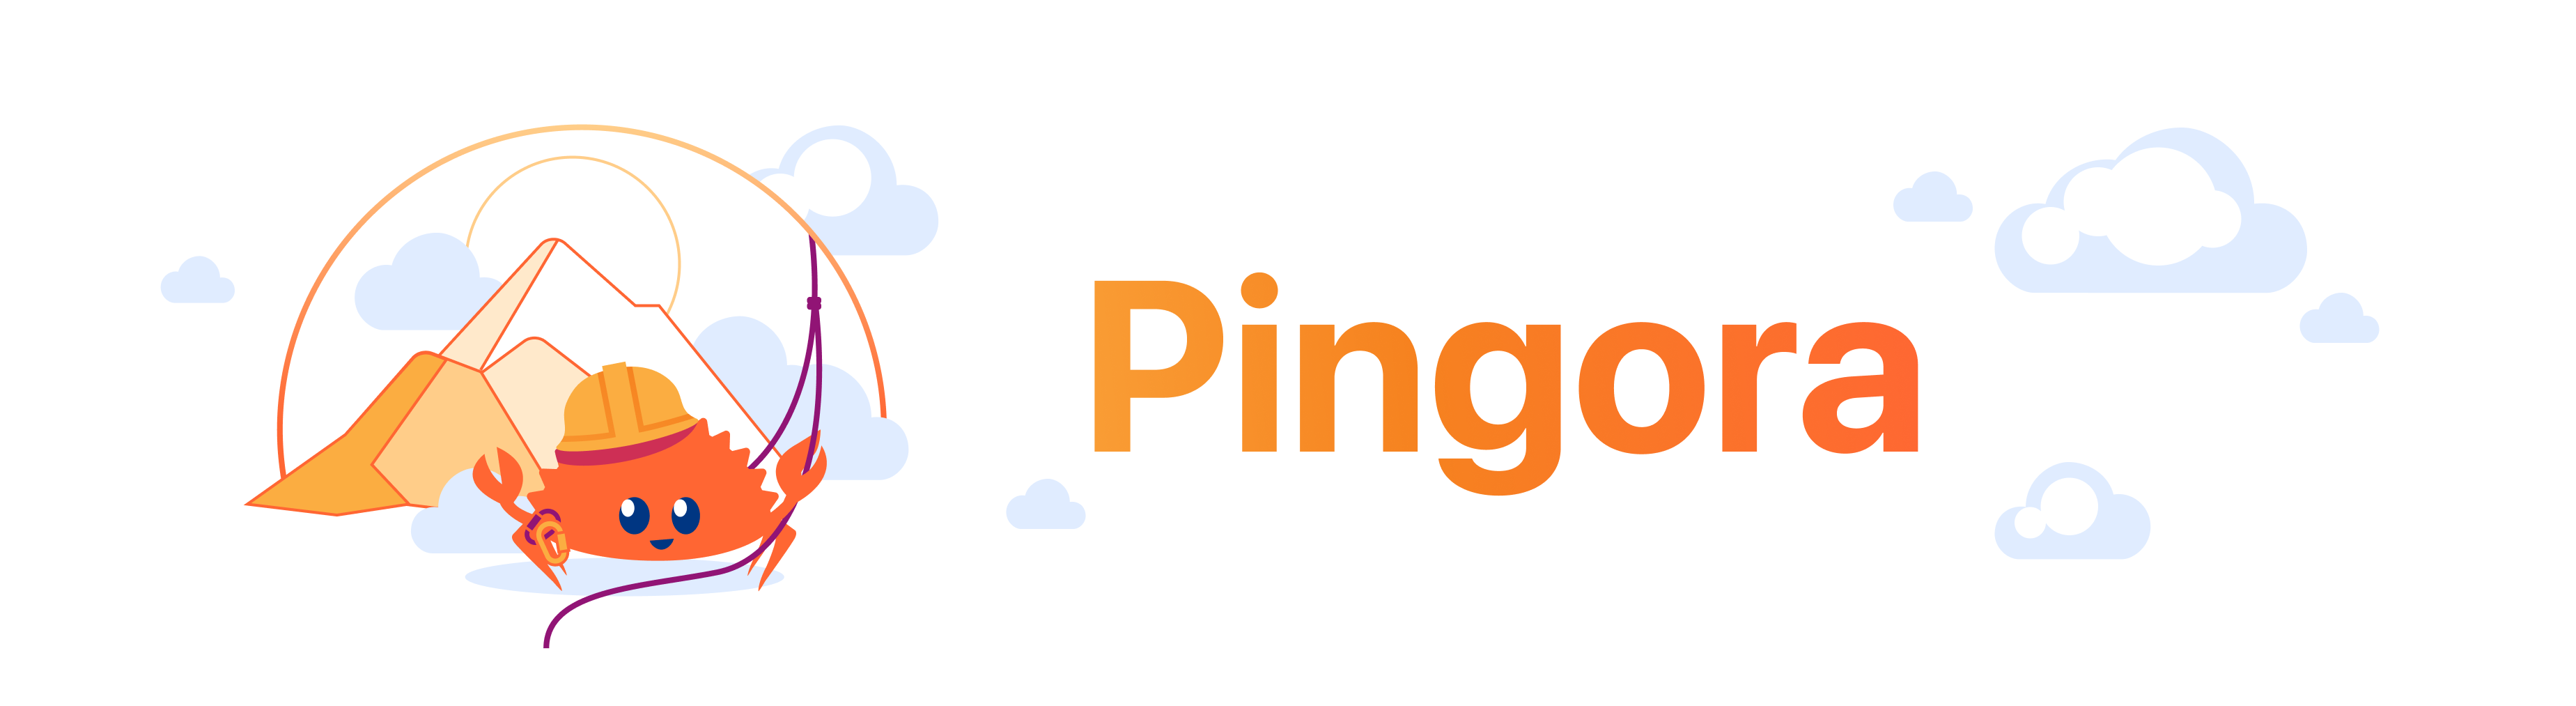 pingora_banner.png